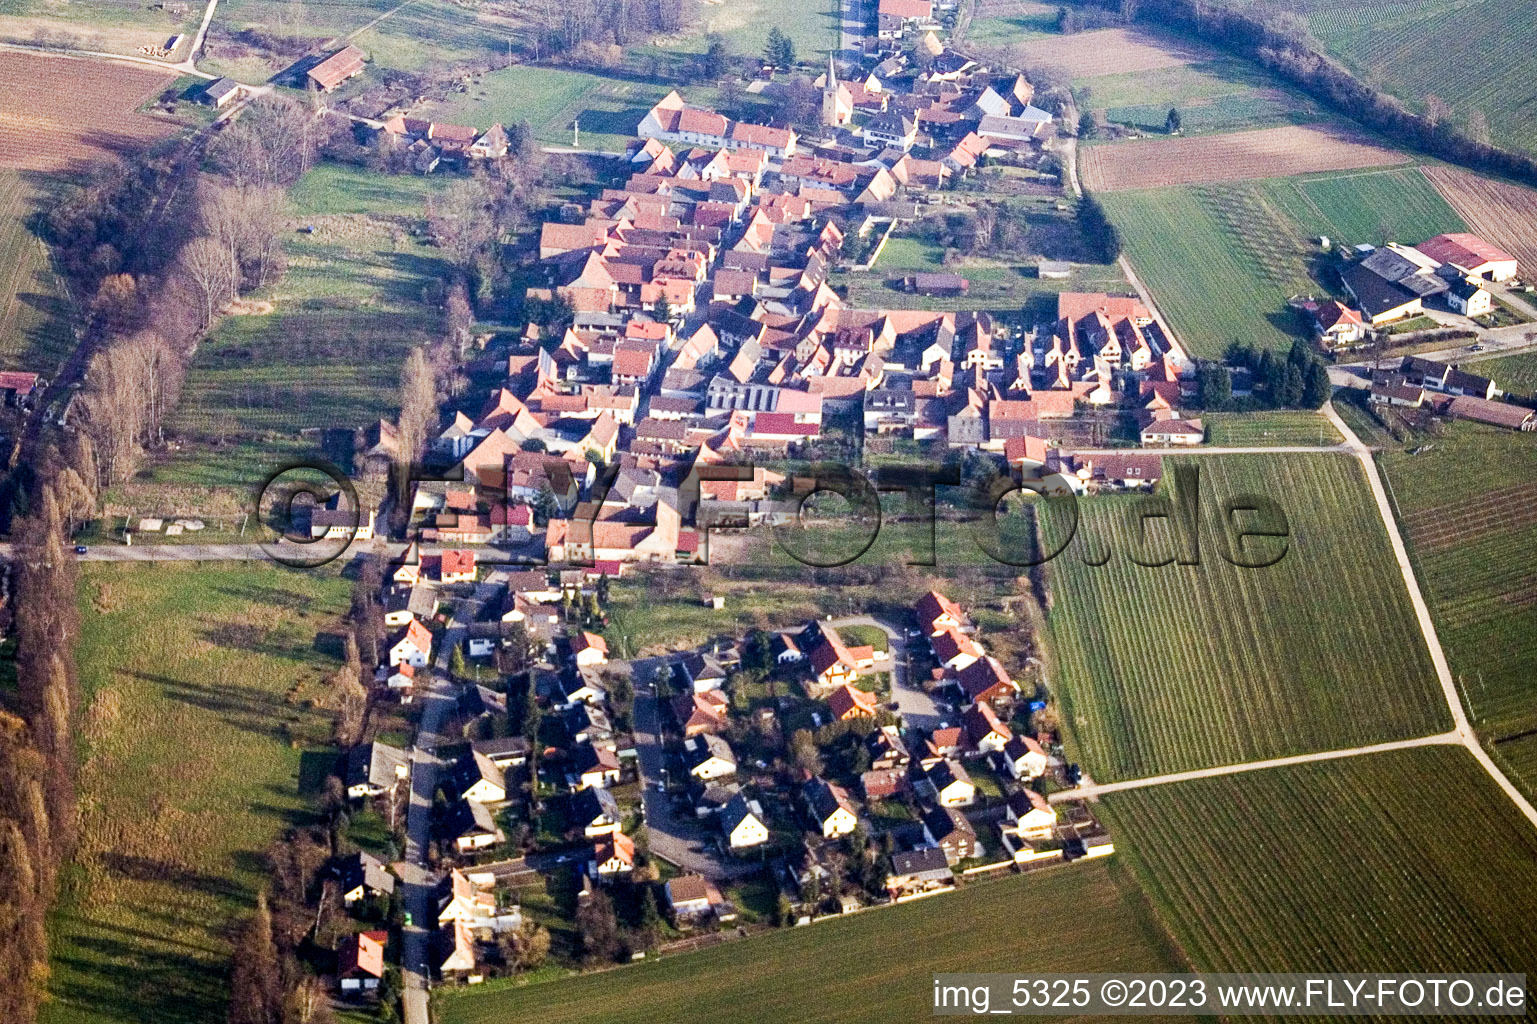 Aerial view of From the west in the district Heuchelheim in Heuchelheim-Klingen in the state Rhineland-Palatinate, Germany